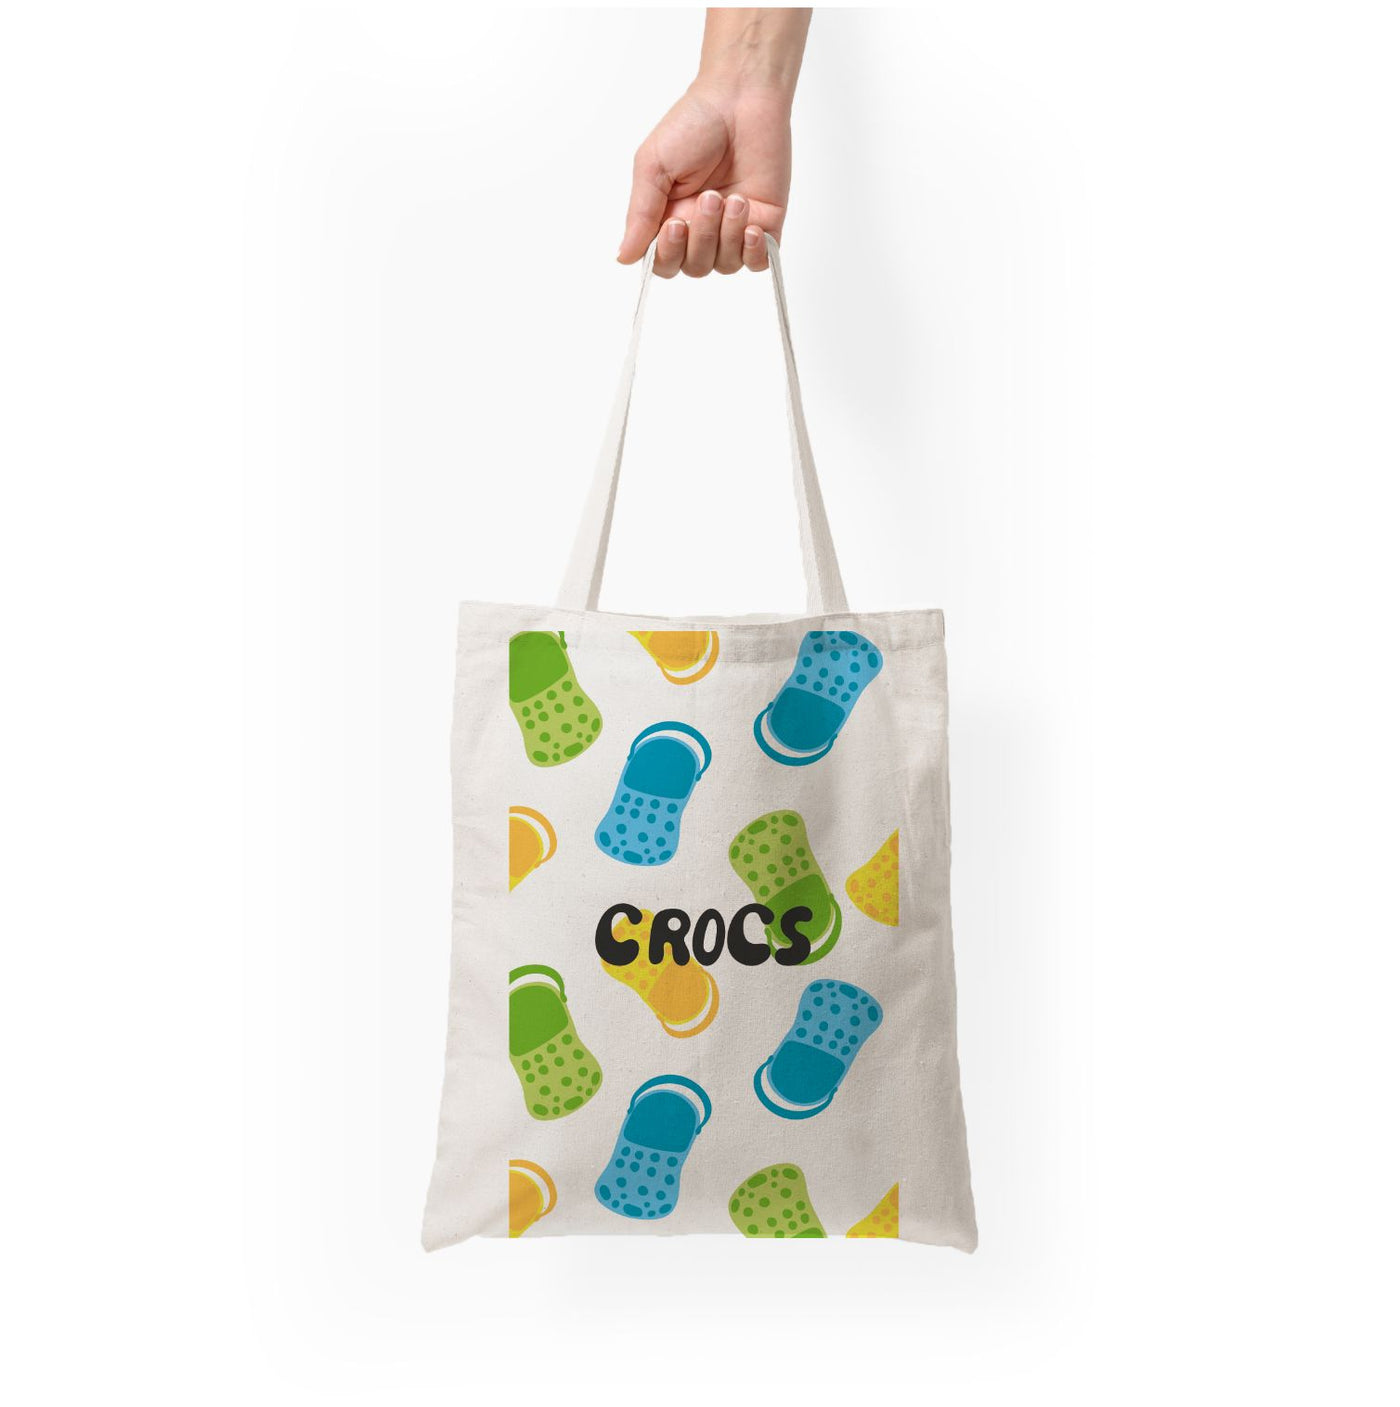 Crocs Pattern Tote Bag